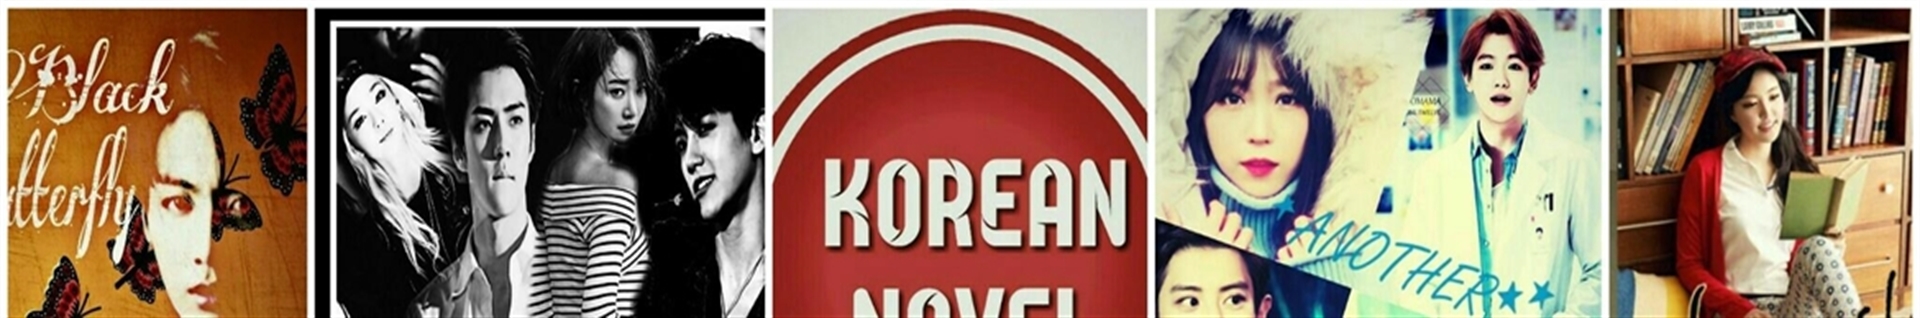 korean_novel1